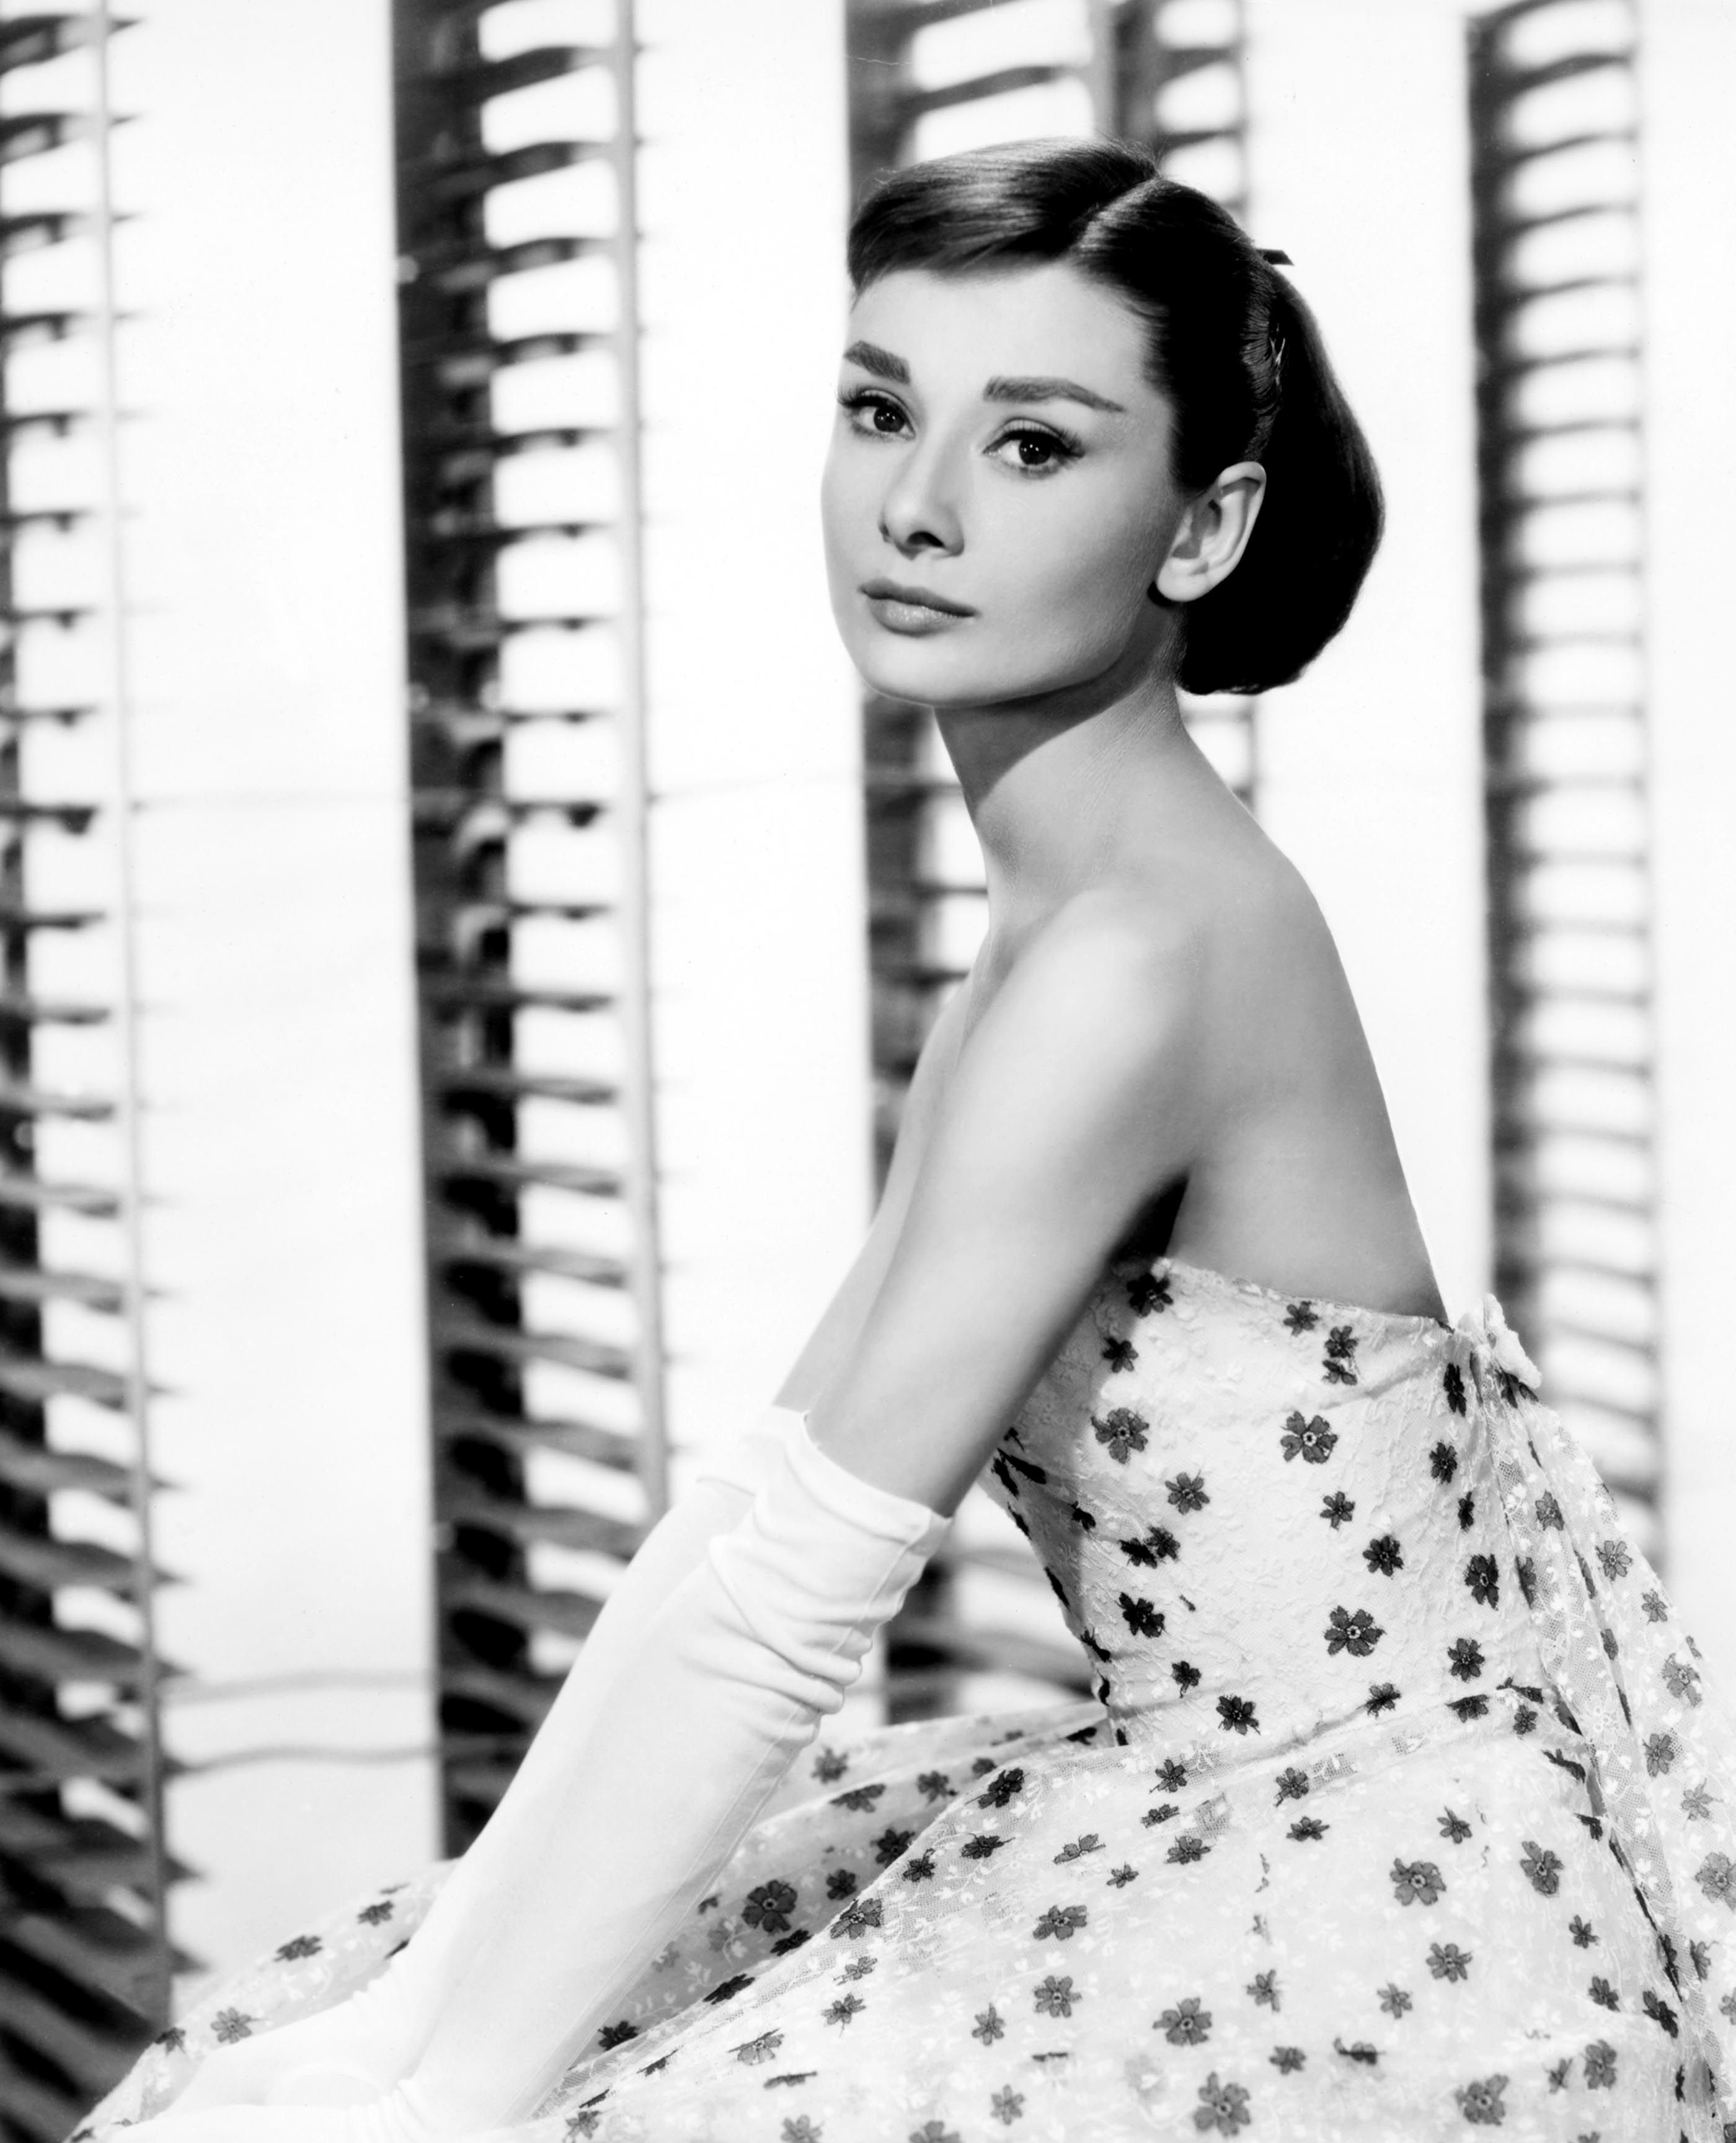 actress, Audrey Hepburn, grayscale, monochrome - desktop wallpaper